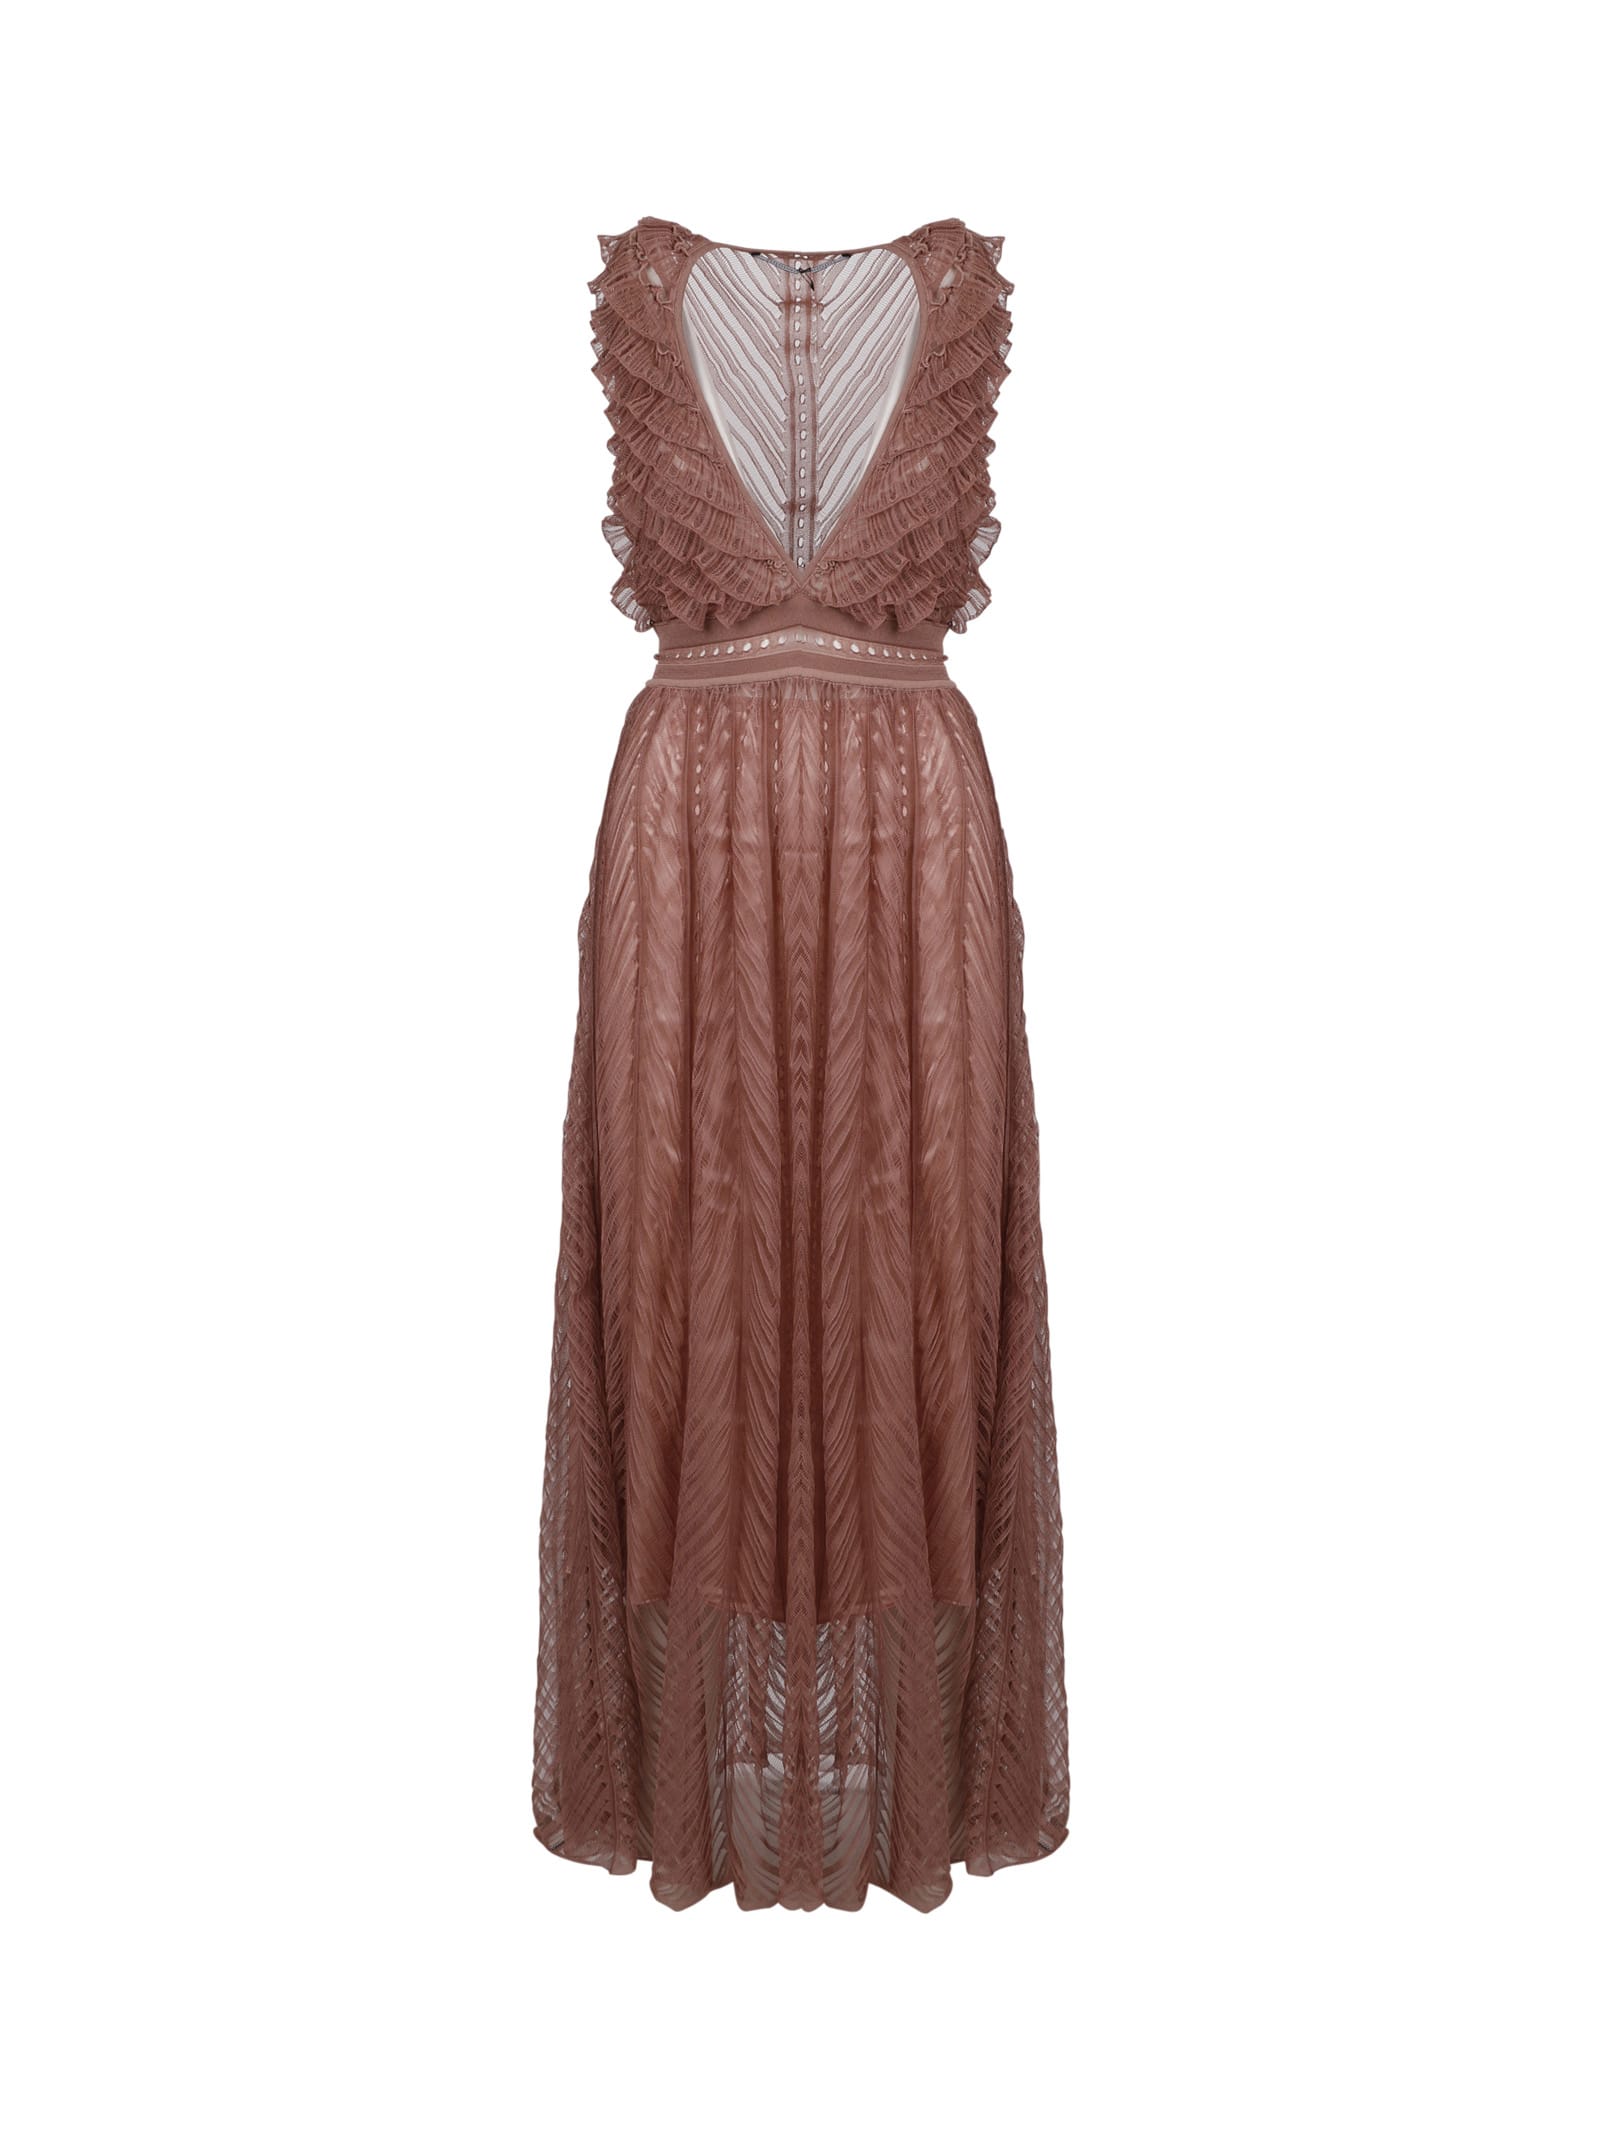 Antonino Valenti Ruffled-detail Sleeveless Dress